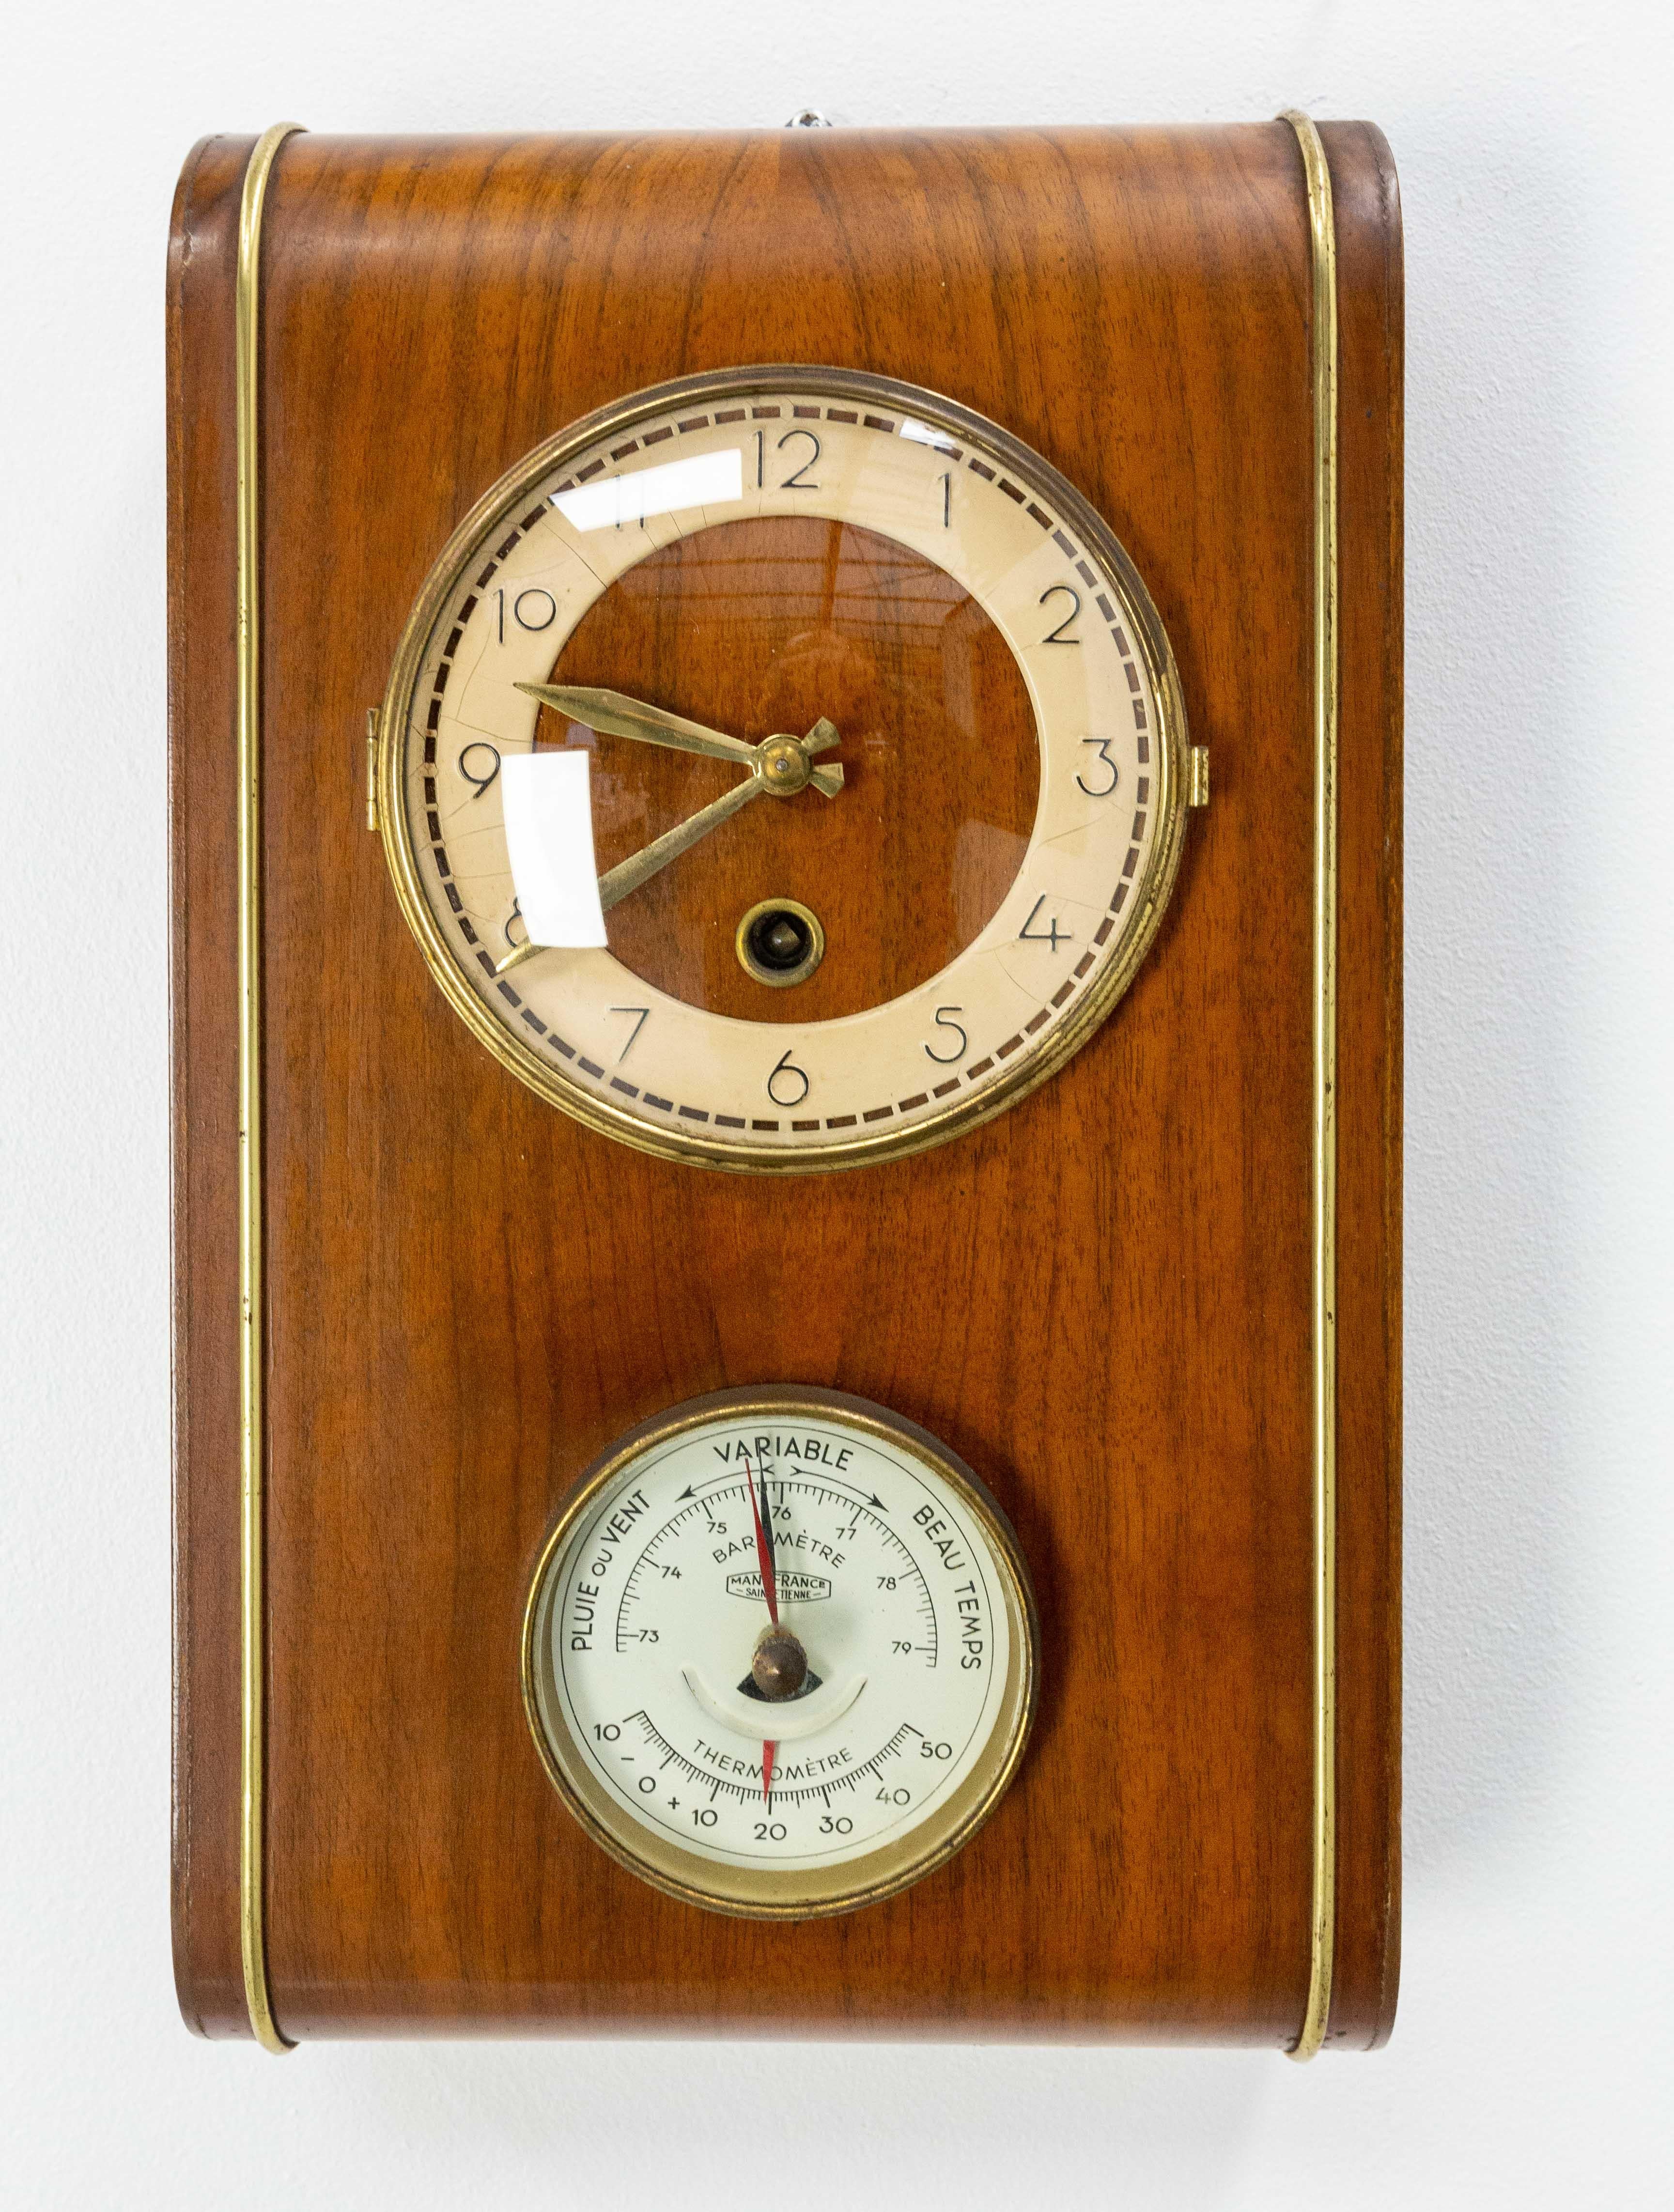 Uhr und Aneroidbarometer aus Nussbaumholz, um 1960.
Das Aneroidbarometer (oder Holosterikbarometer) wurde von dem Franzosen Lucien Vidie entwickelt, der es 1844 zum Patent anmeldete (in Collaboration mit Antoine Redier, dem Erfinder des Weckers).